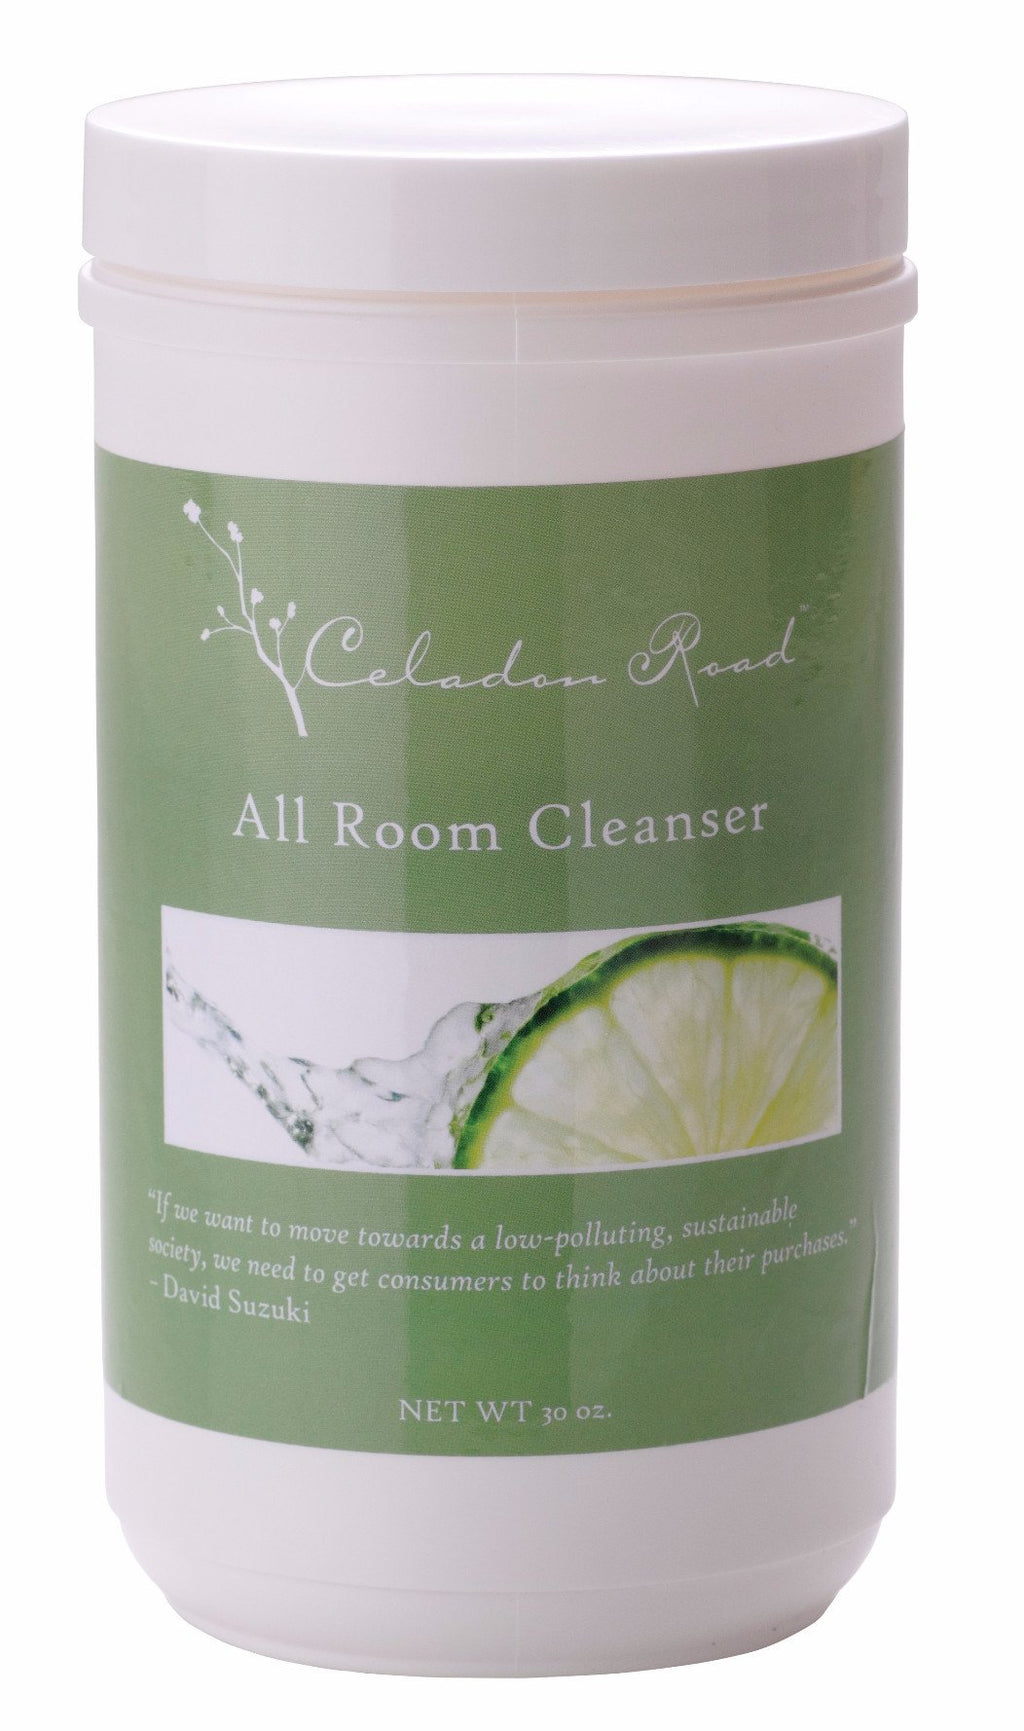 All Room Cleanser- Celadon Road- www.celadonroad.com